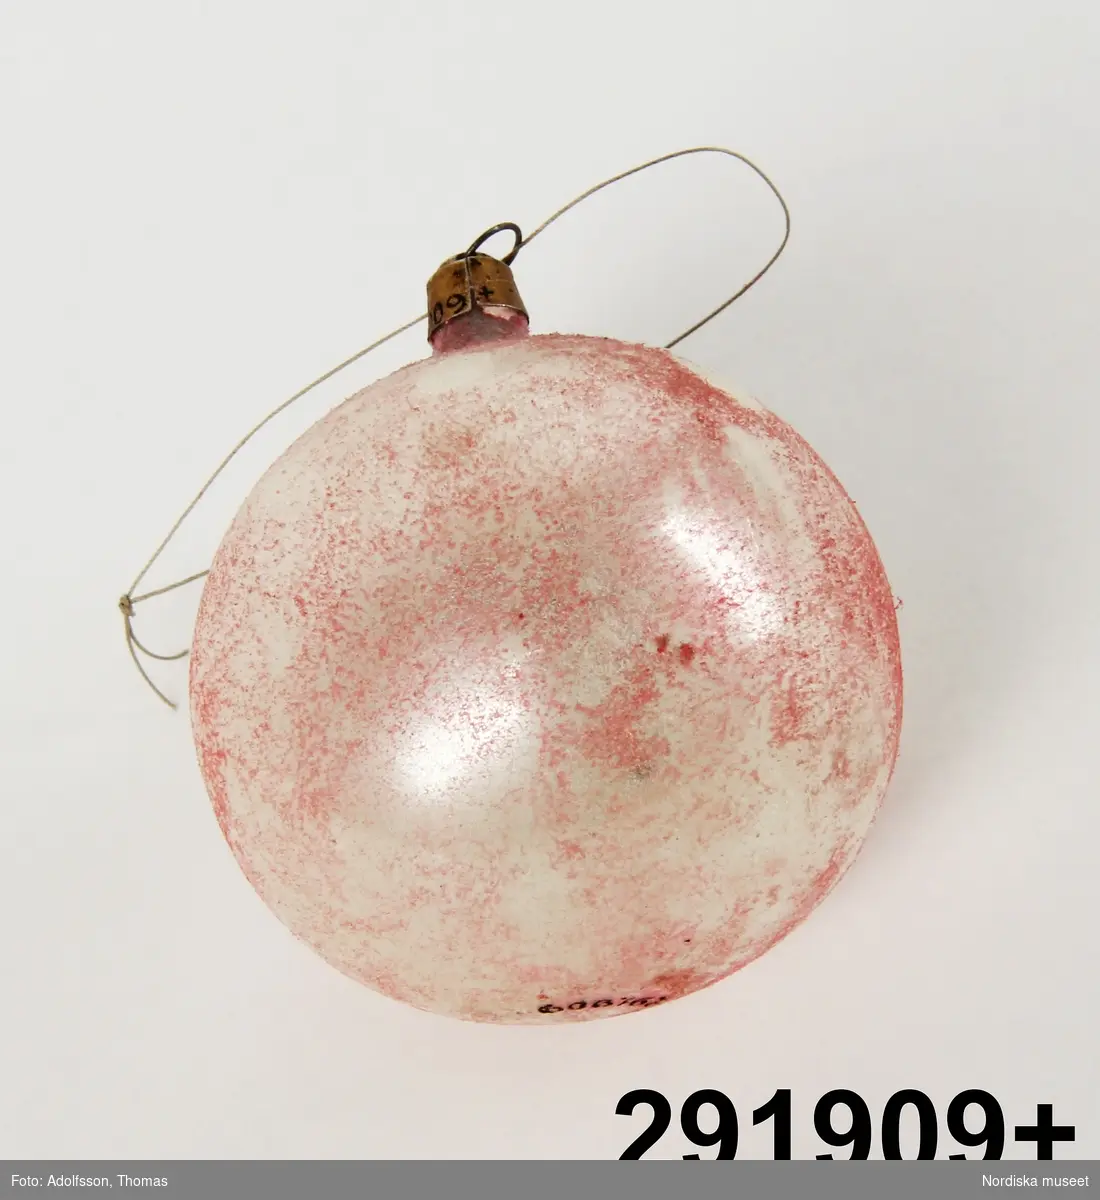 Huvudliggare:
"Julgransprydnad, glaskulor, 12 st; olika färger, en del folierade, nötta; upphängningshylsor; Diam ca 5 cm; förvaras i ask, indelad i 12 fack; mått 28 x 21,5 x 7 cm."

En av de 12 glaskulorna - en rund tvåfärgad rödvit rutig- är i 9 bitar.
2006-02-20 LEKÄ